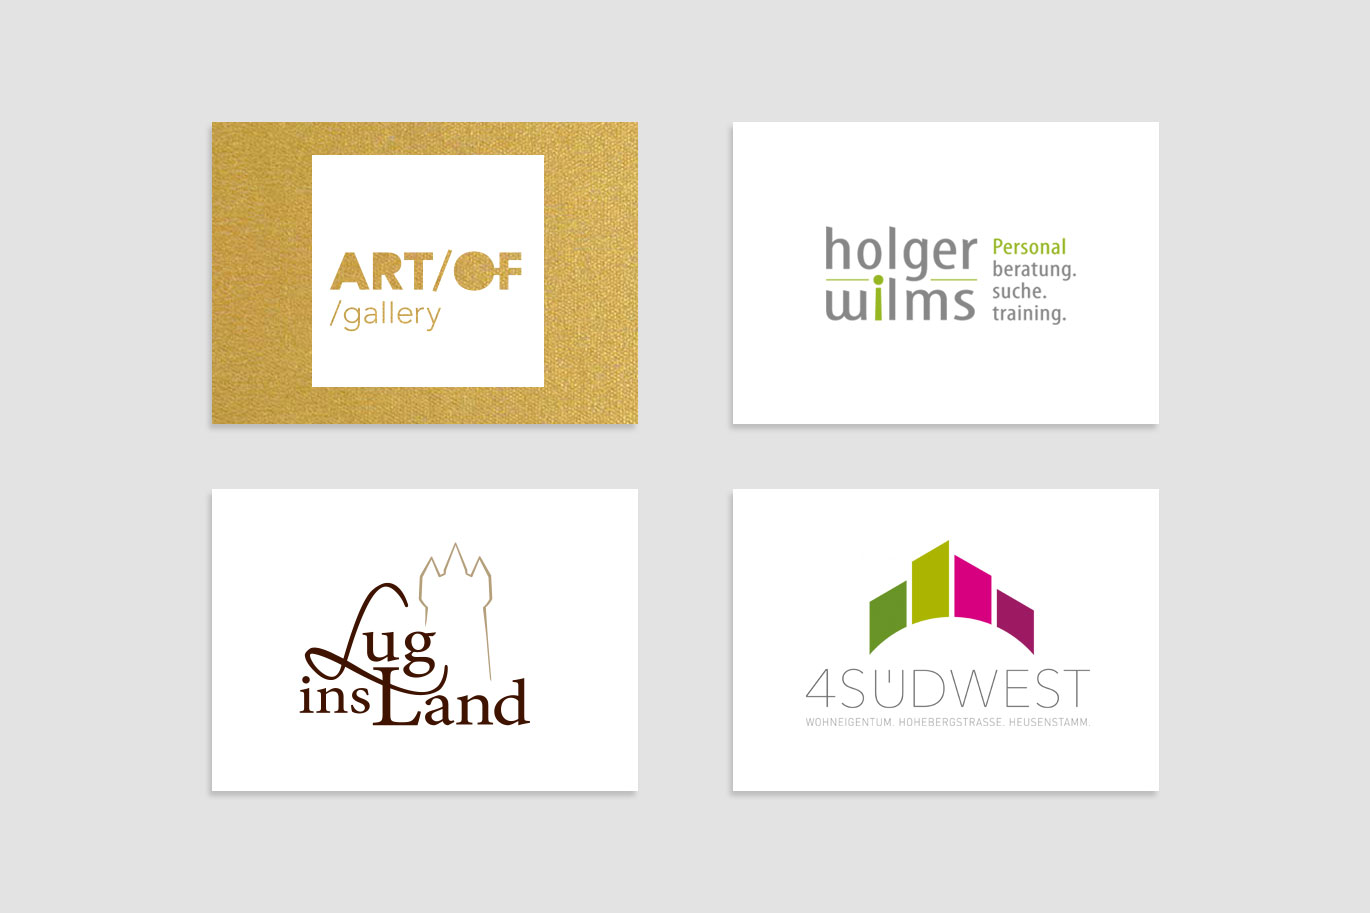 TAG EINS Werbeagentur in Frankfurt und Graz, Logodesign, Corporate Design